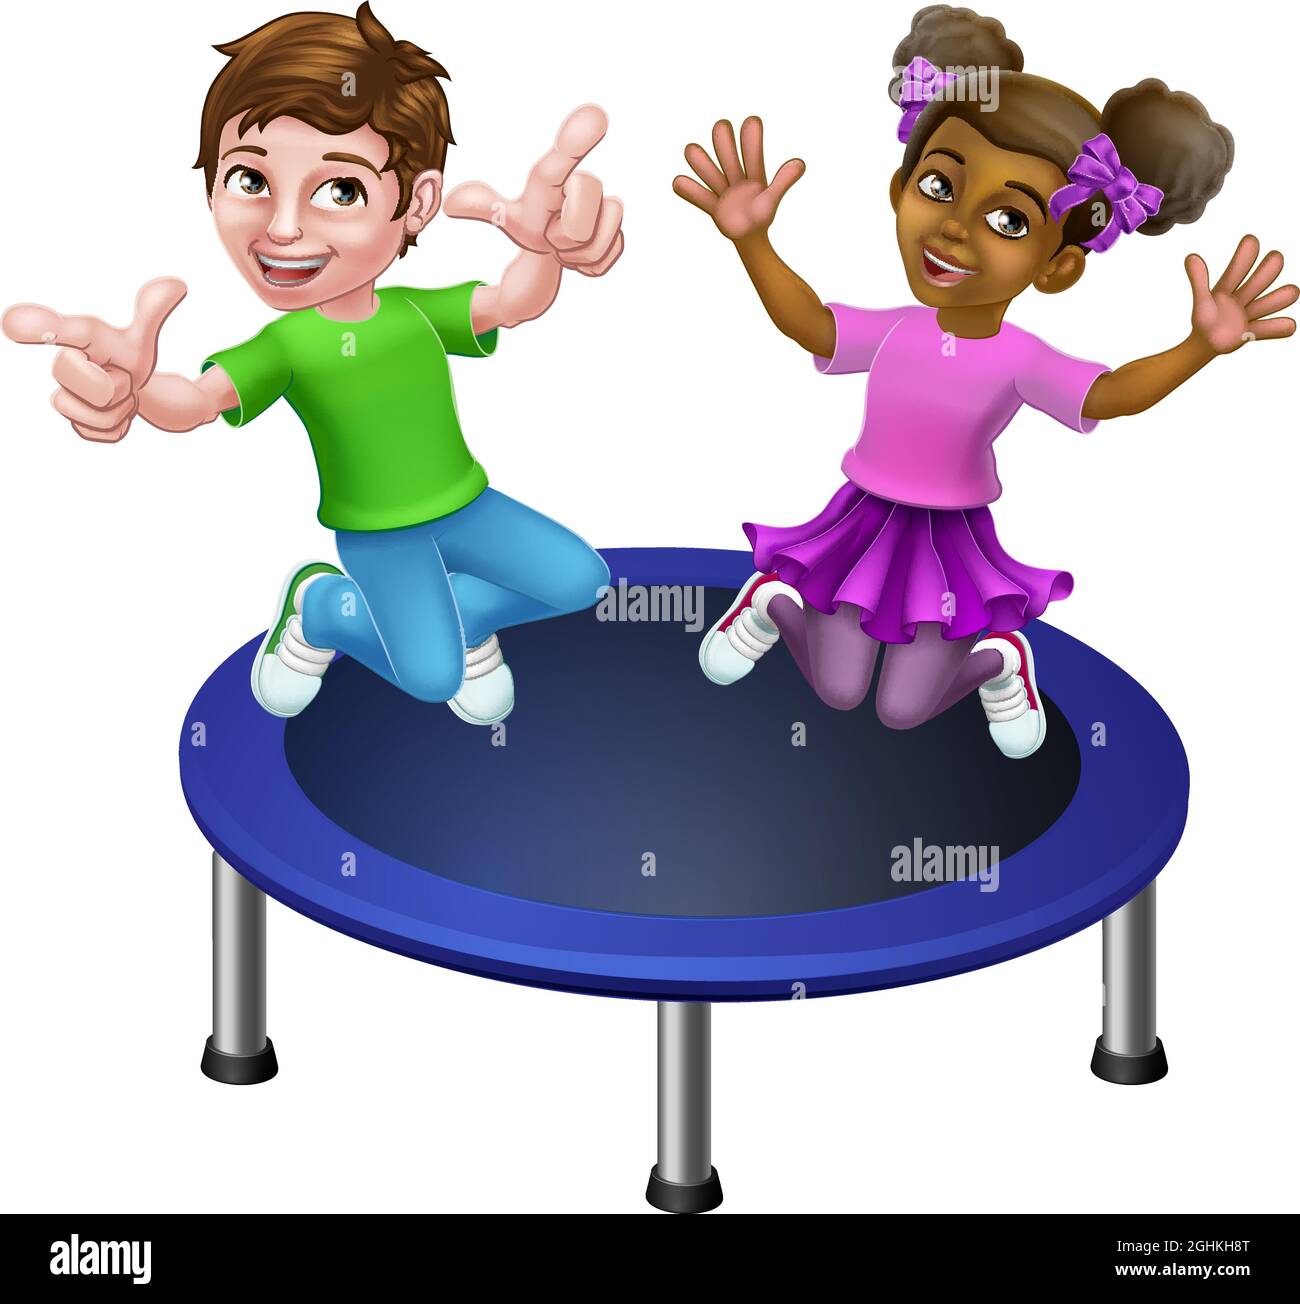 Les enfants sautent sur Un trampoline de dessin animé Image Vectorielle  Stock - Alamy